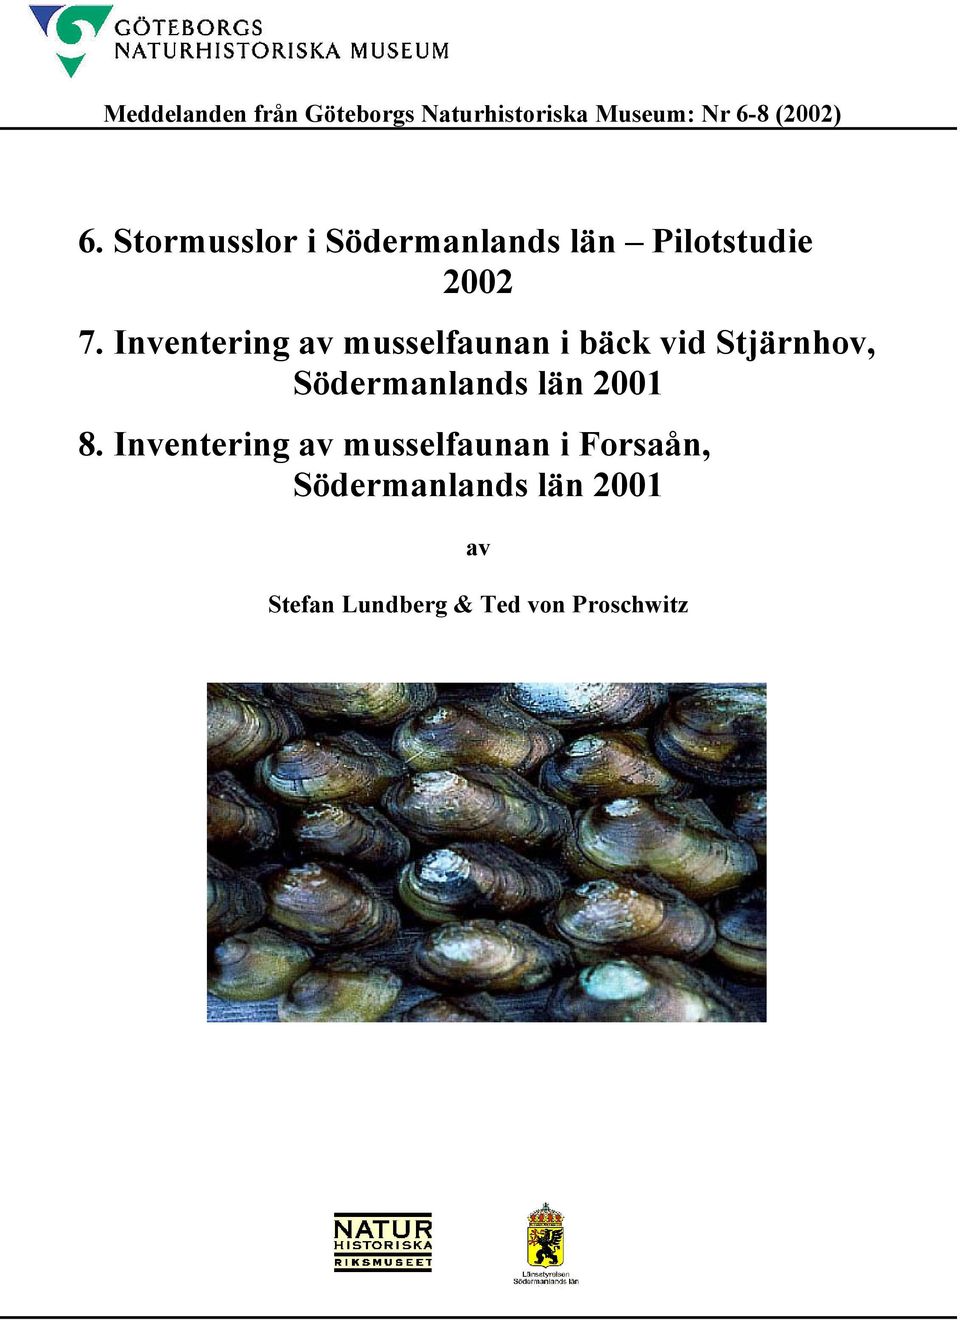 Inventering av musselfaunan i bäck vid Stjärnhov, Södermanlands län 2001 8.